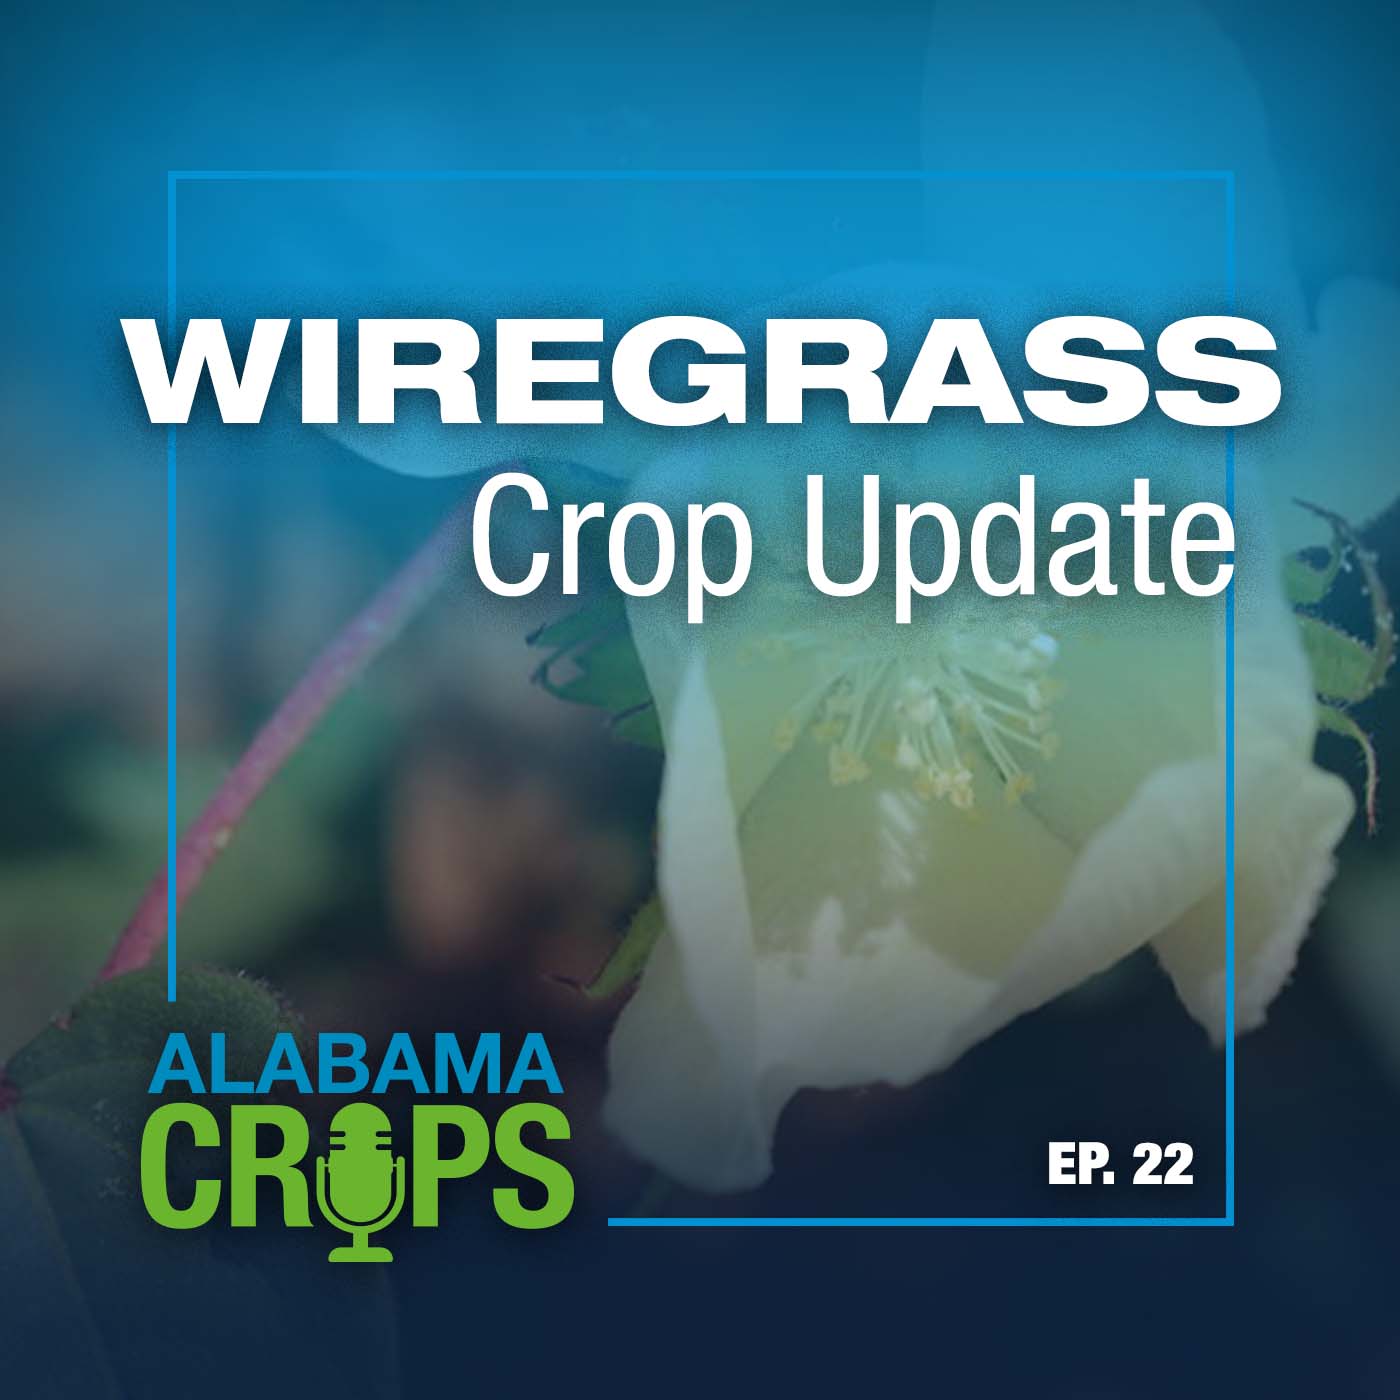 Episode 22—Wiregrass Crop Update